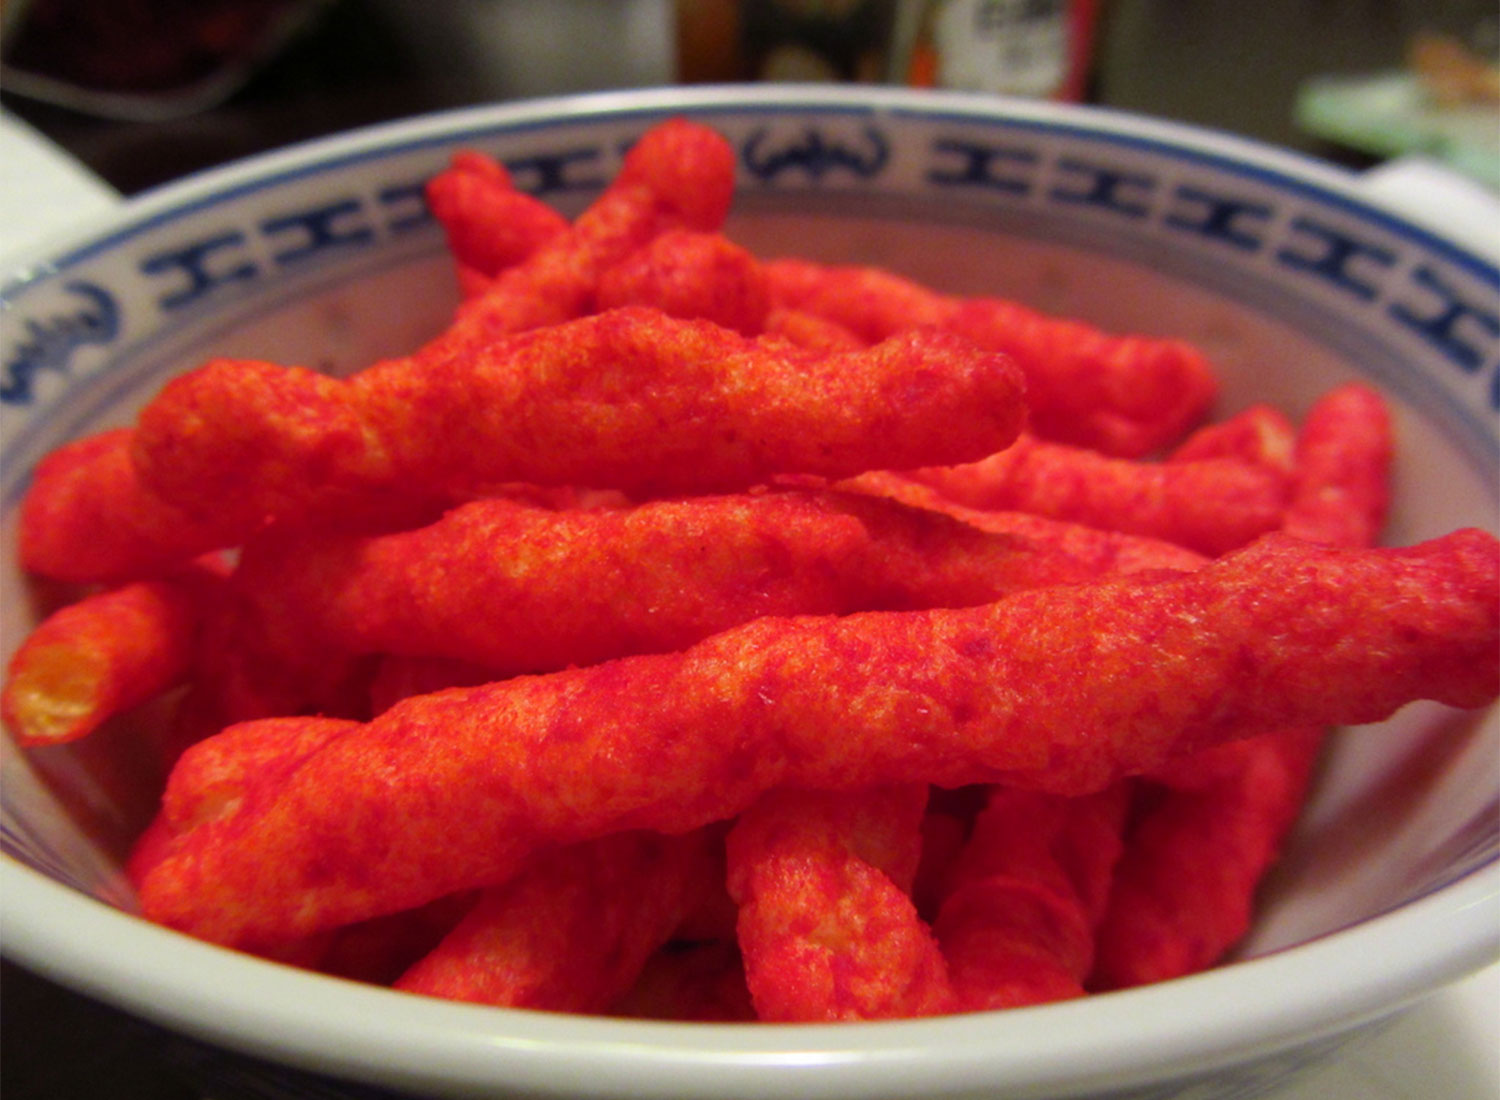 20. Flamin' Hot Cheetos.